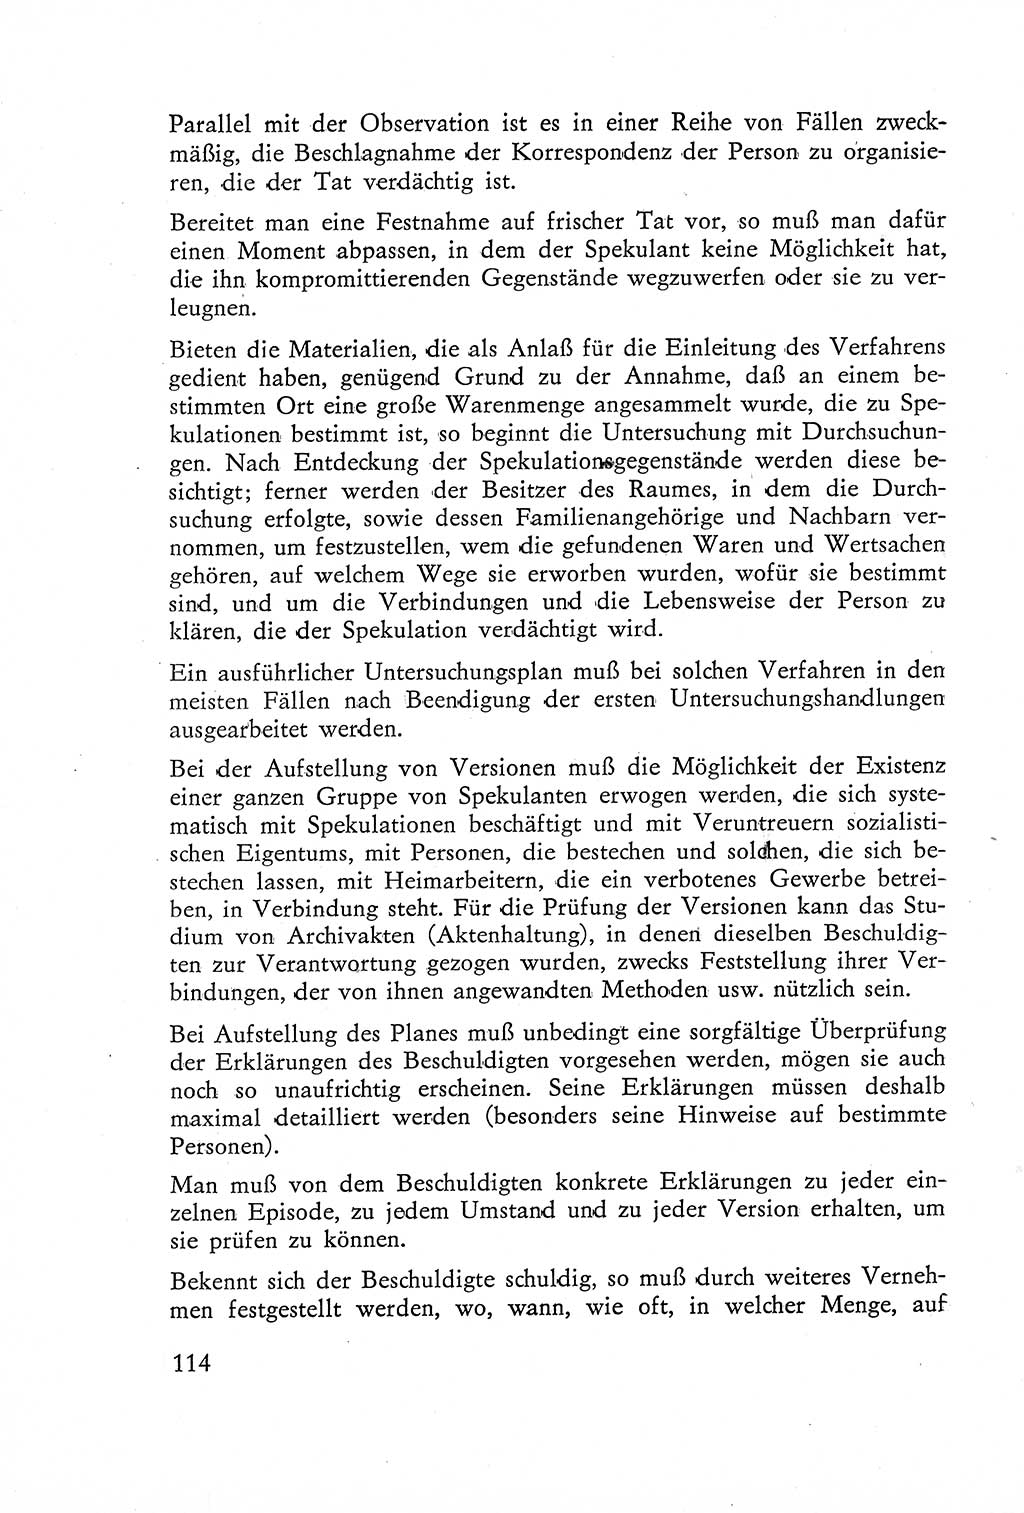 Die Untersuchung einzelner Verbrechensarten [Deutsche Demokratische Republik (DDR)] 1960, Seite 114 (Unters. Verbr.-Art. DDR 1960, S. 114)